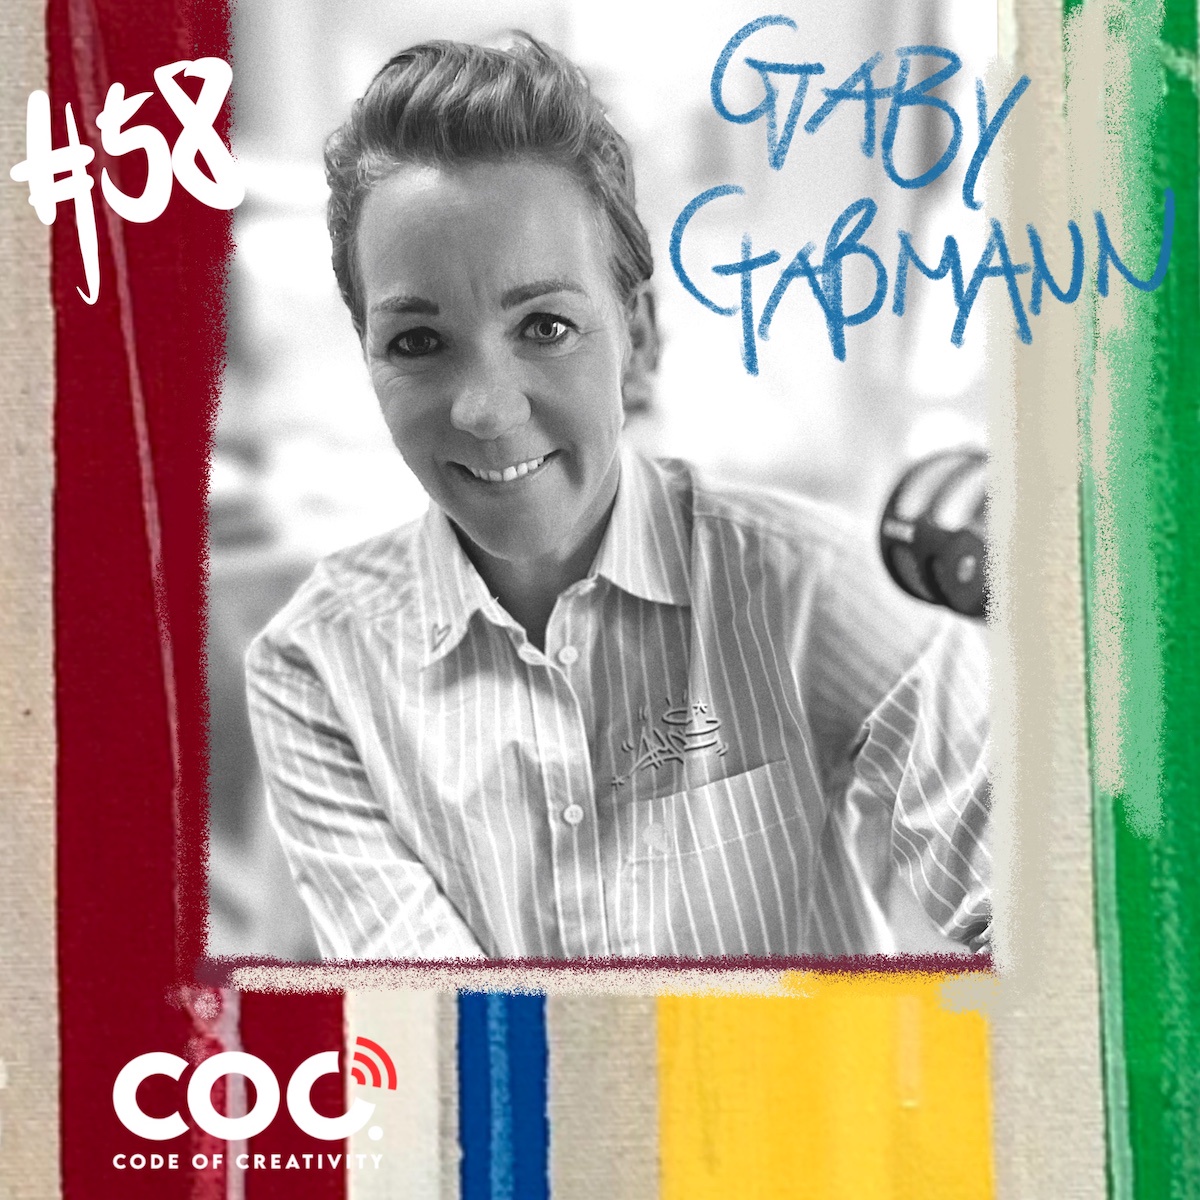 #58 Gaby Gaßmann - Unternehmerin von Magnus Mineralbrunnen